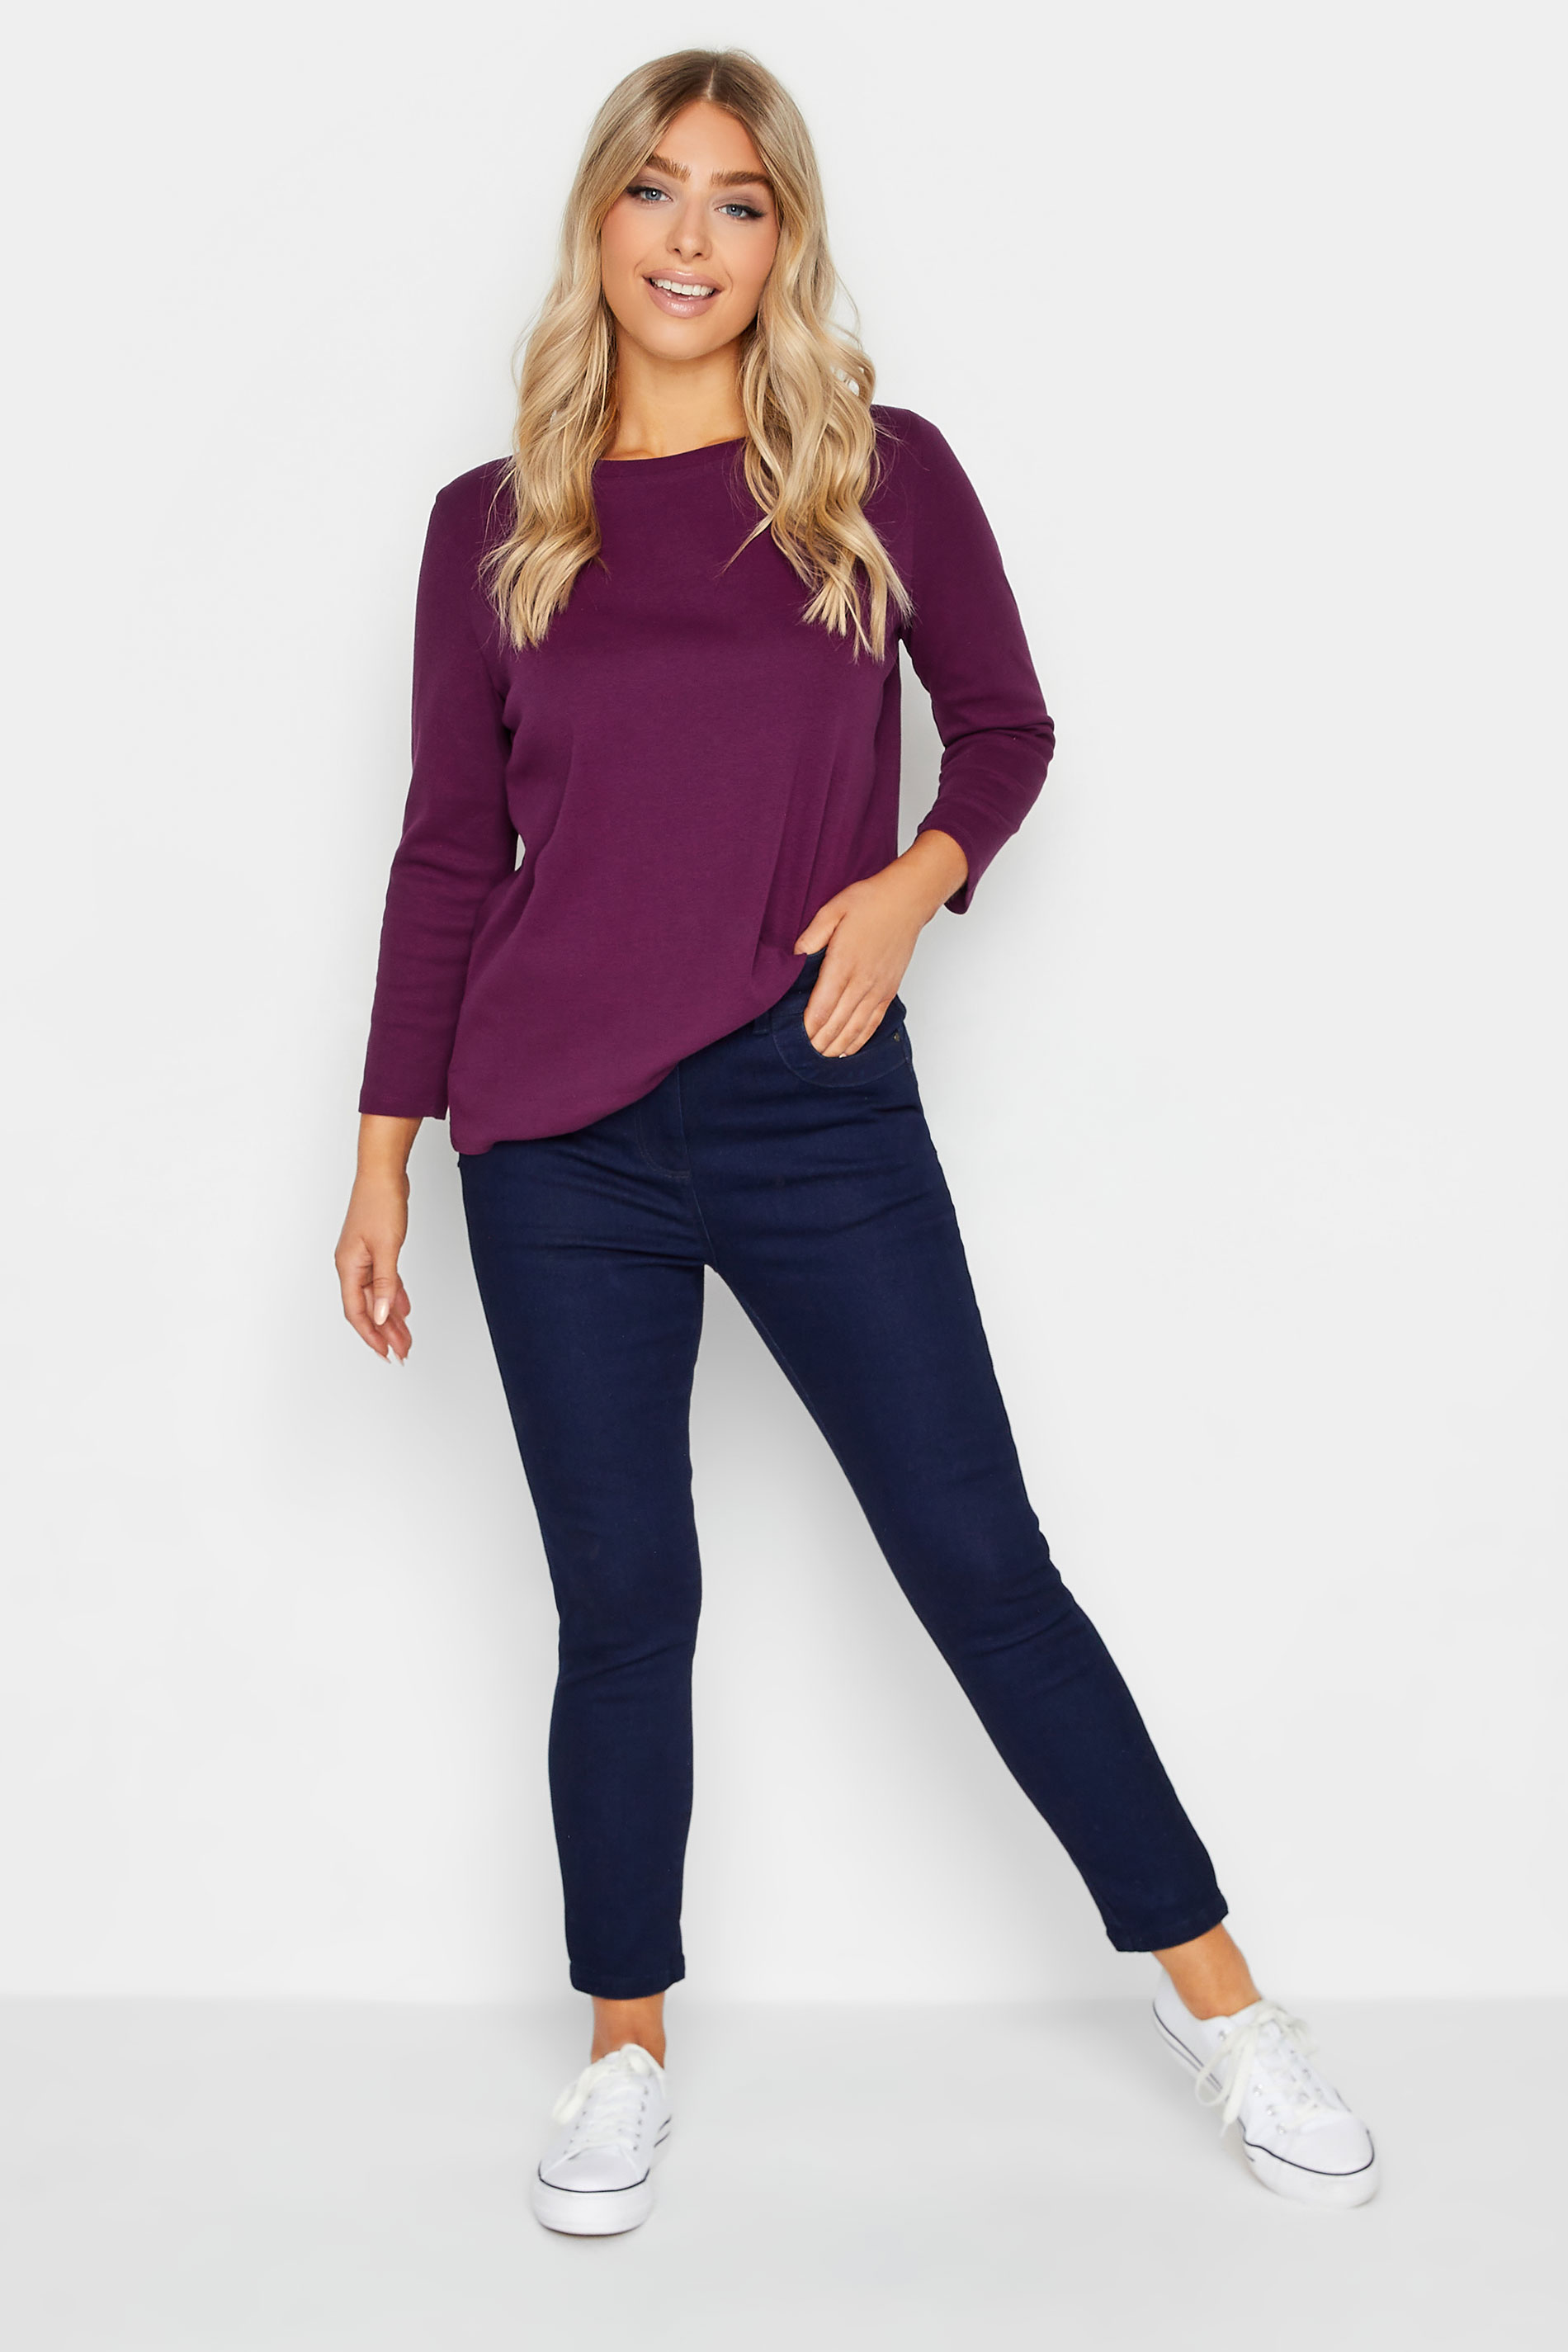 M&Co Purple Long Sleeve Cotton Blend Top | M&Co  2